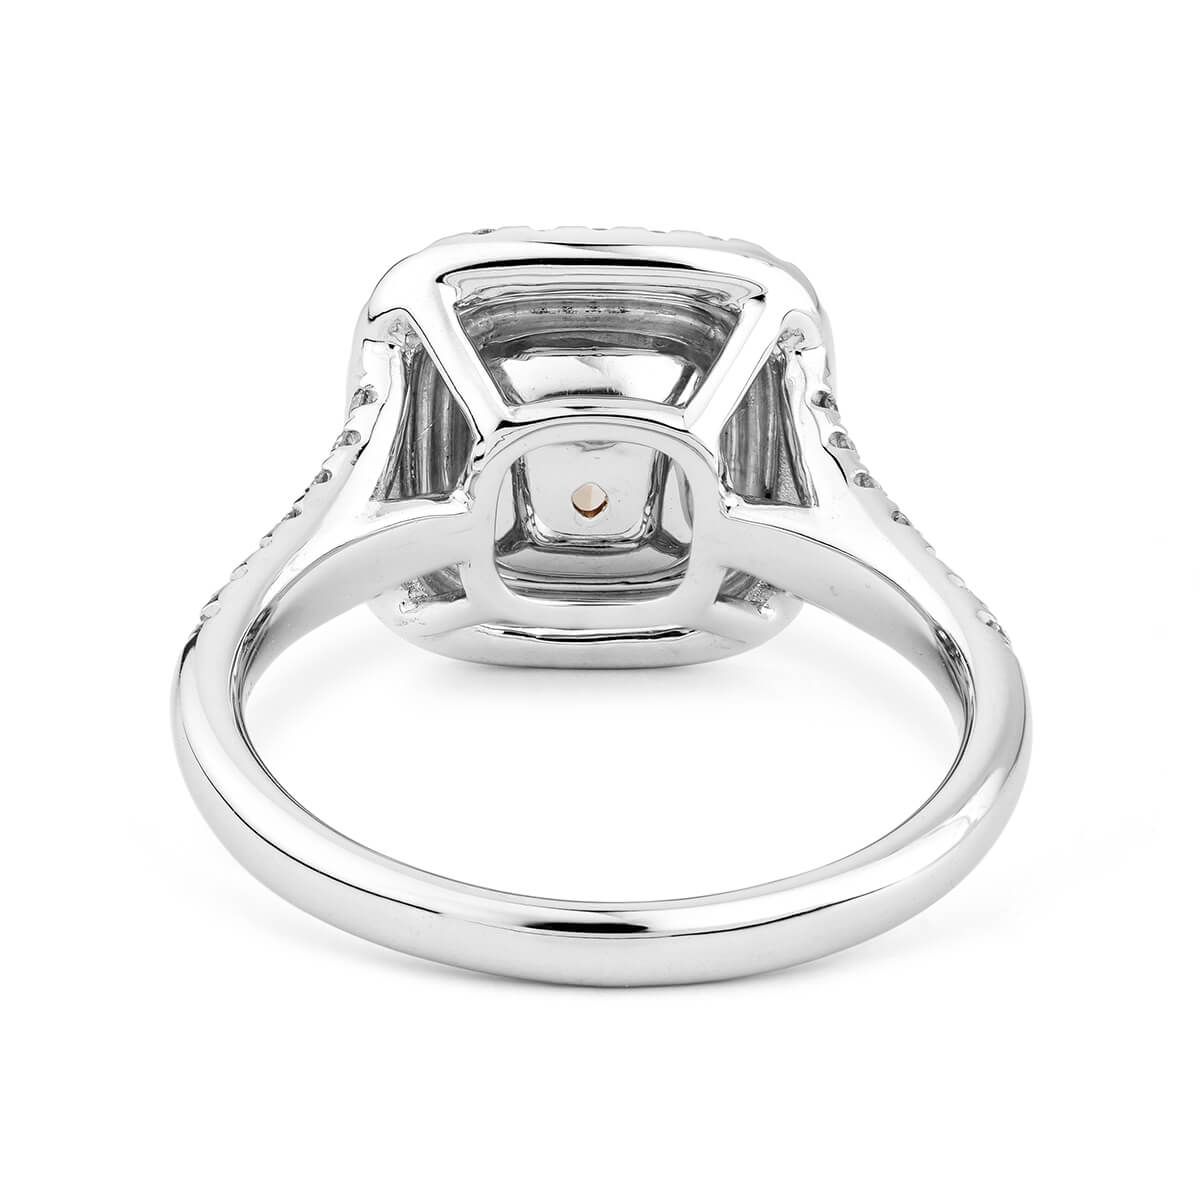 Fancy Yellow Diamond Ring, 1.99 Ct. TW, Cushion shape, GIA Certified, 2181653159